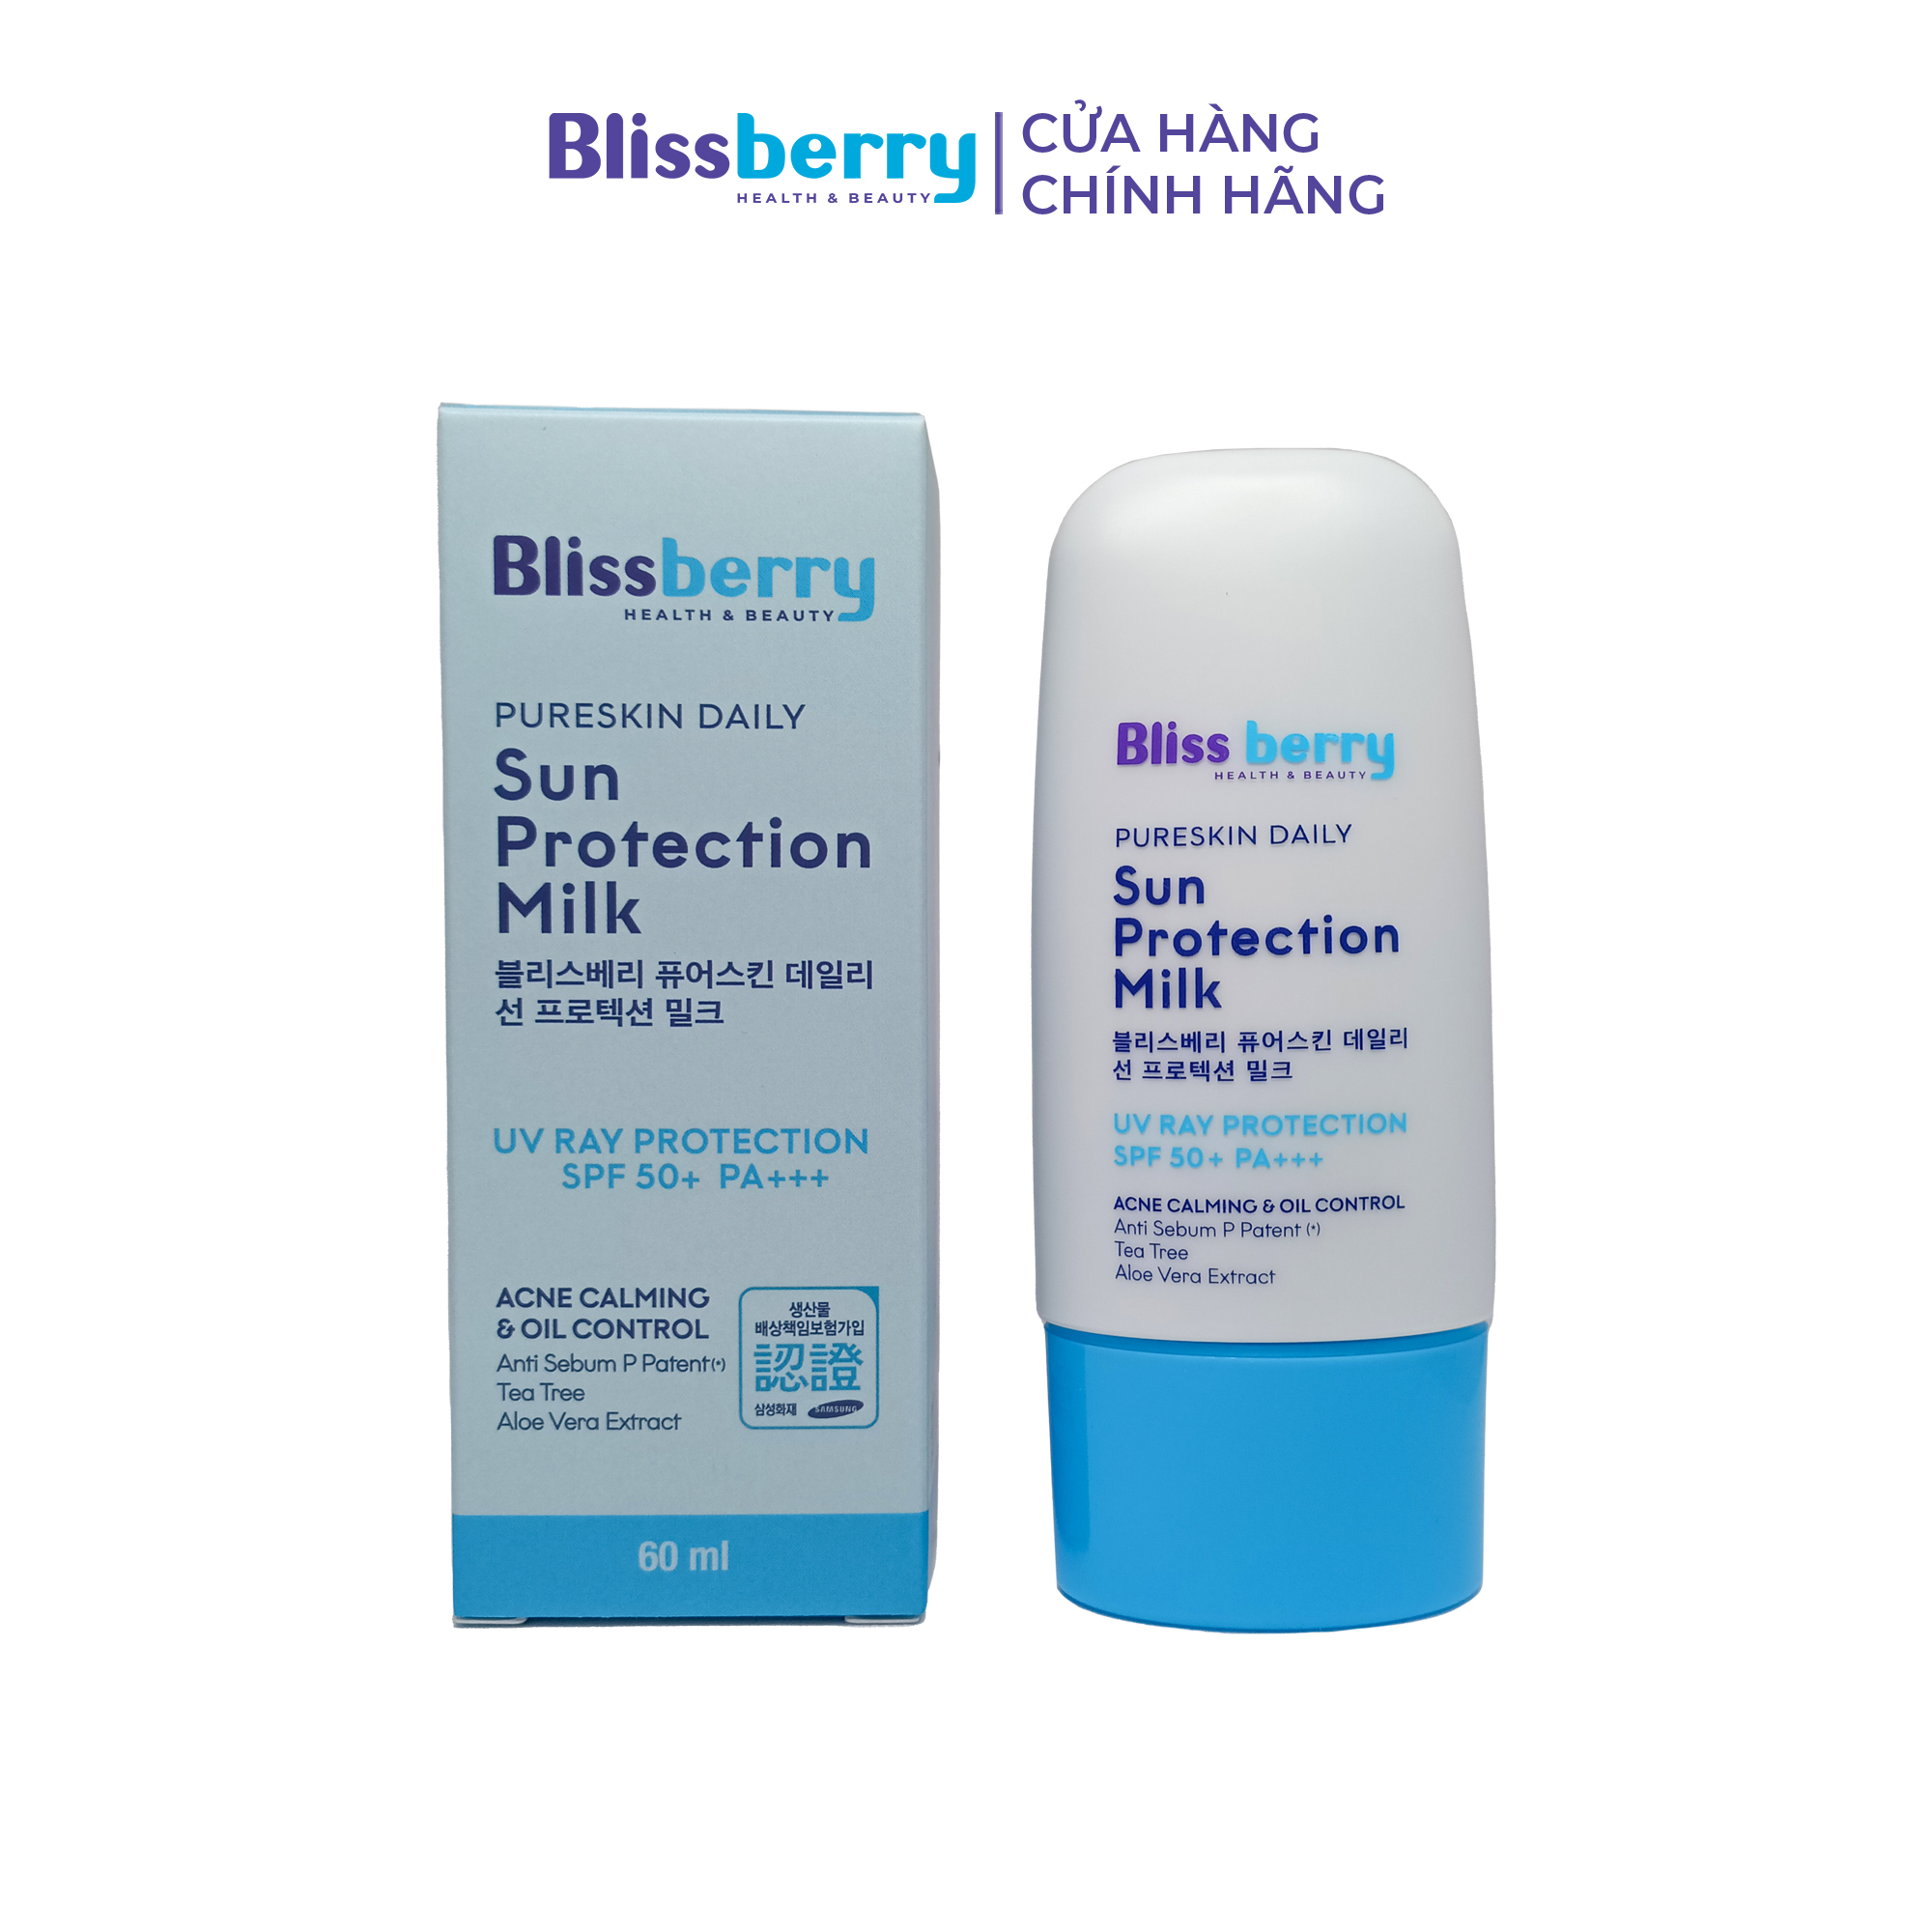 Kem chống nắng nâng tone kiềm dầu Blissberry Daily Sun Protection Milk 60ml